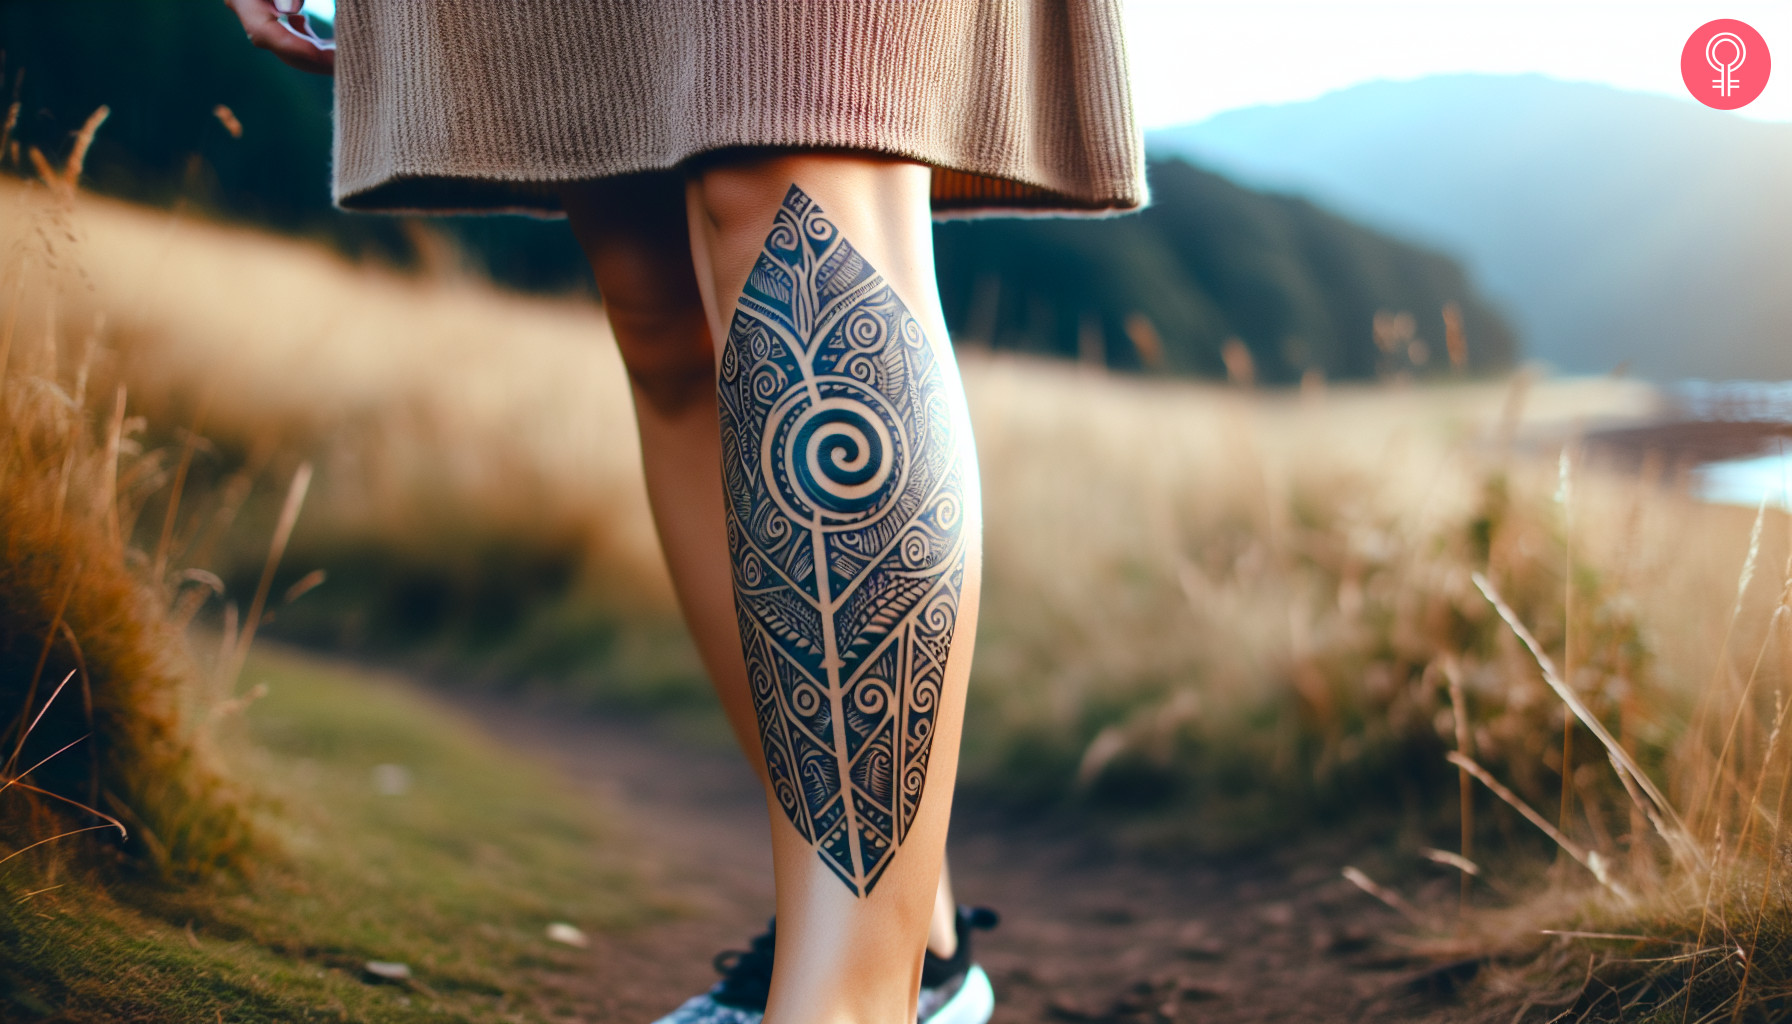 Lower leg maori tattoo on a woman